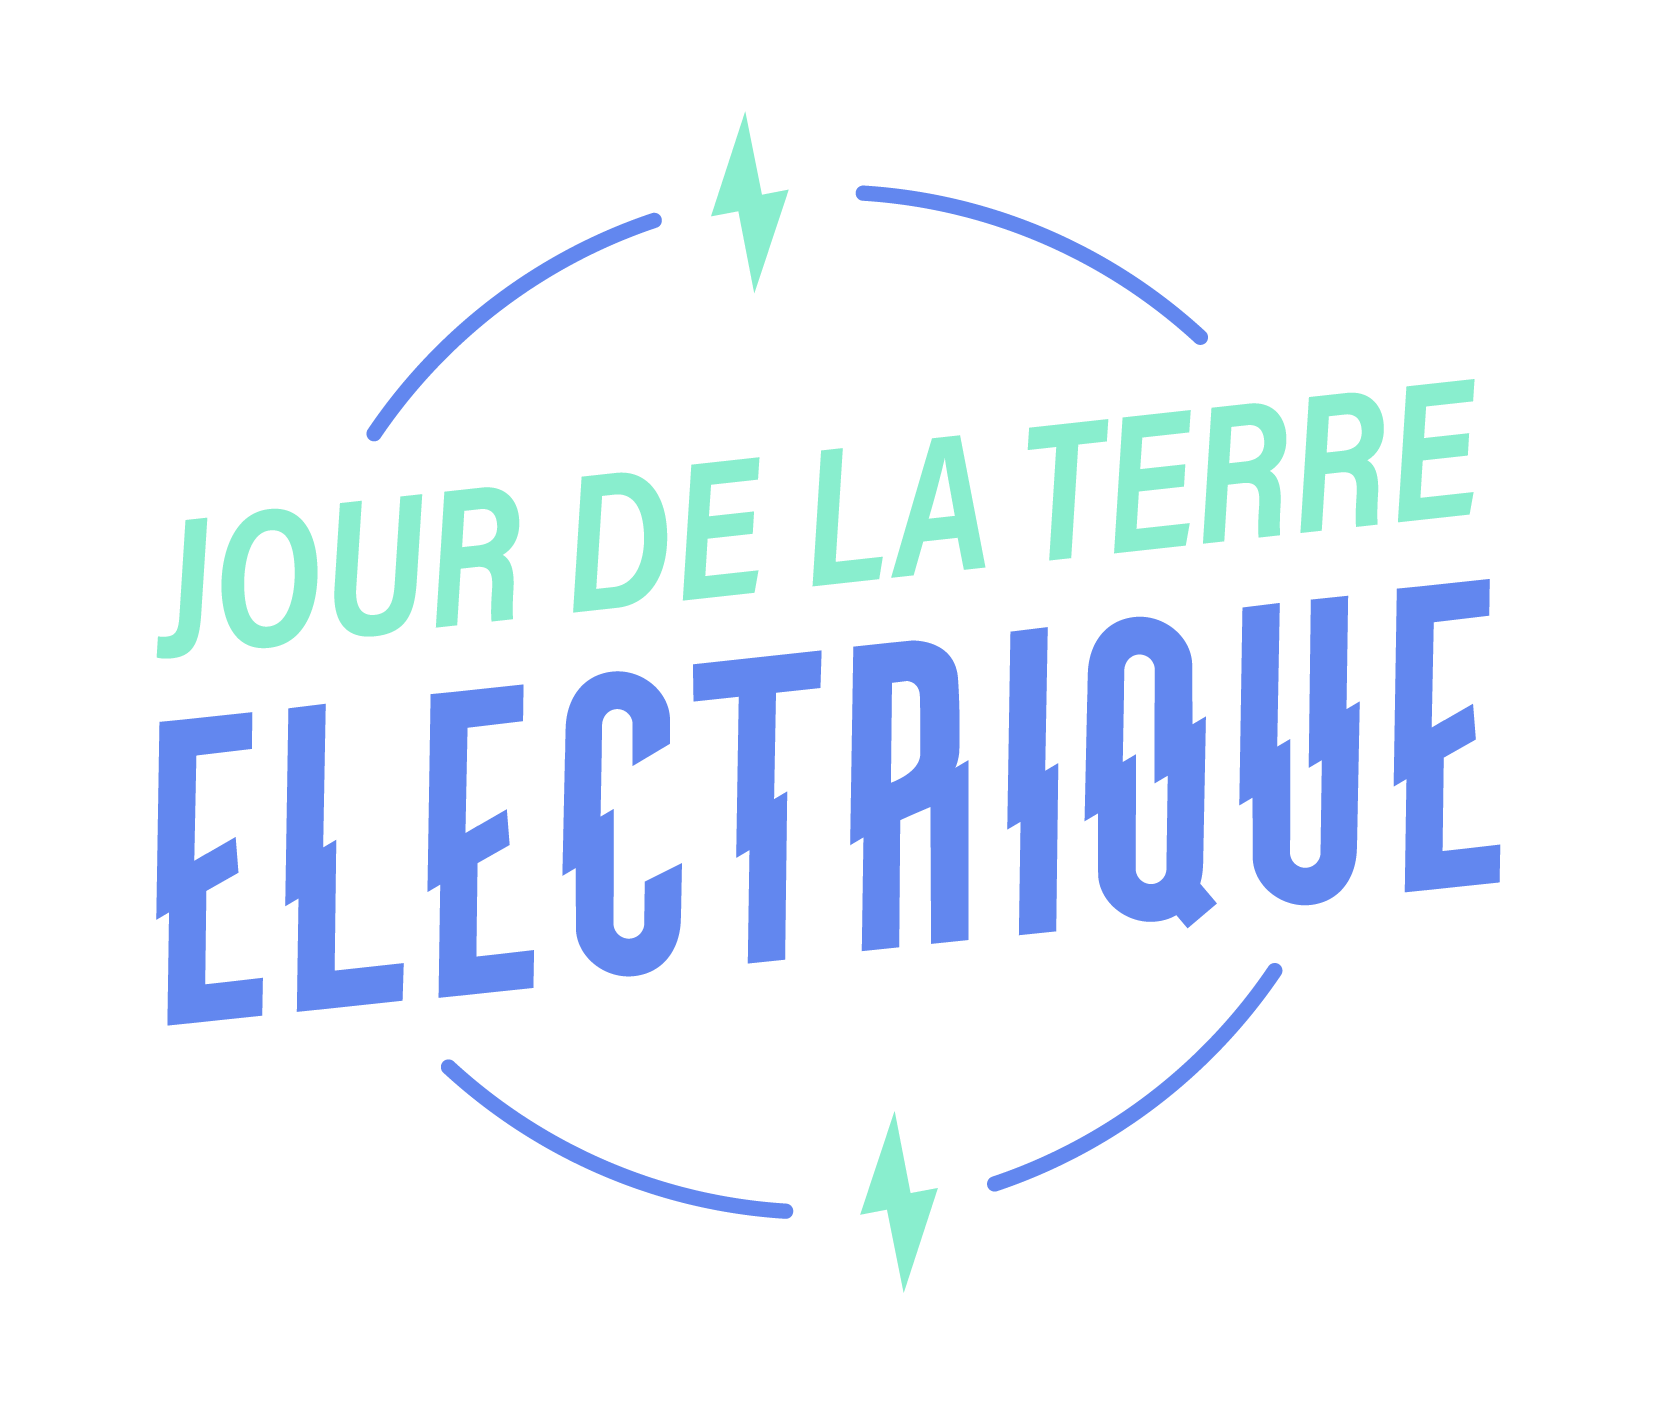 Profitez des célébrations du Jour de la Terre électrique pour amorcer votre transition vers les véhicules électrifiés!